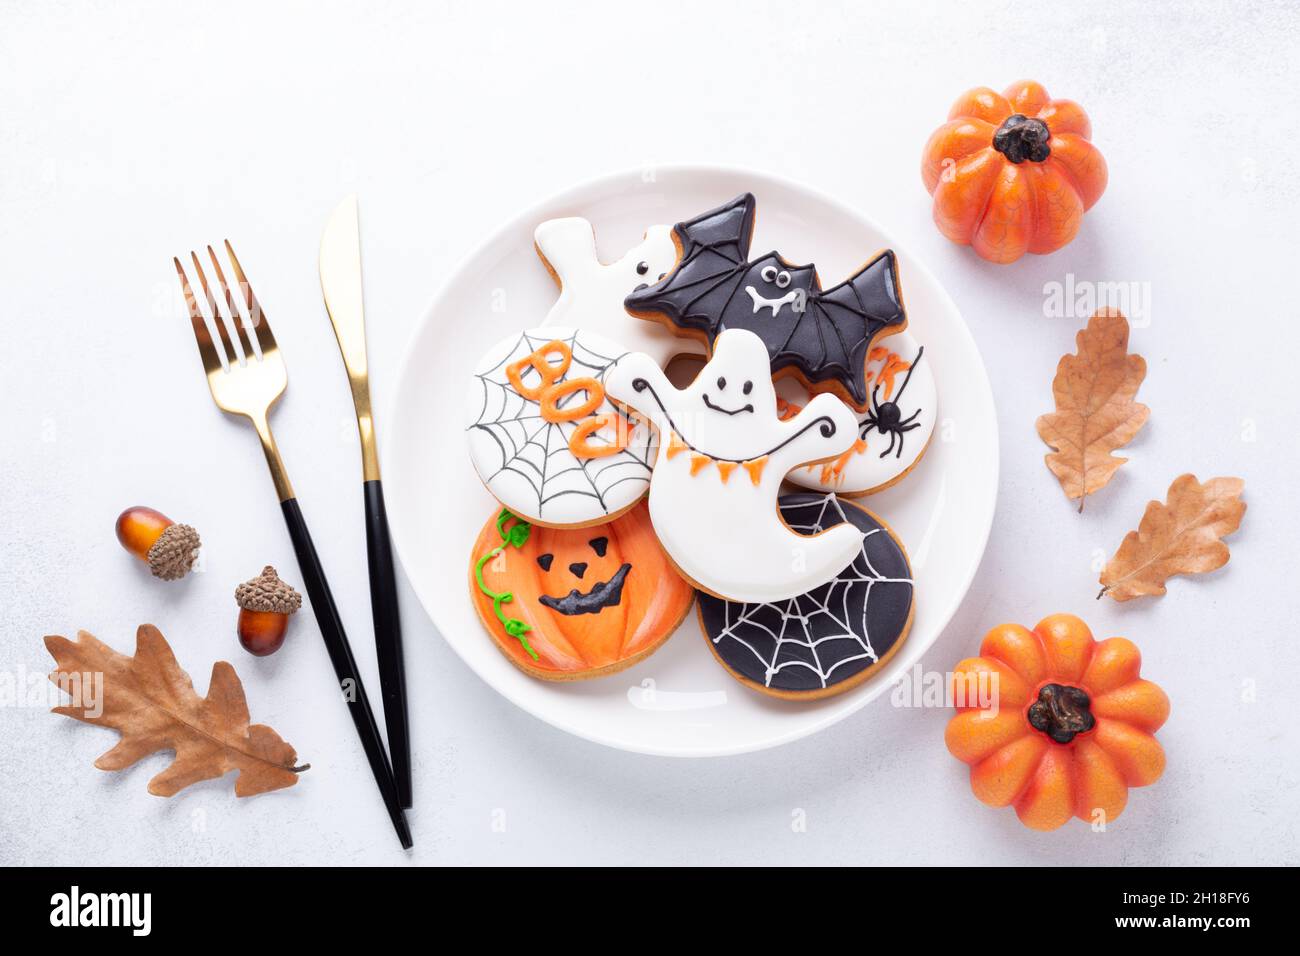 Table d'Halloween avec biscuits au pain d'épice sur plaque blanche et amèrement sur fond blanc.Biscuits maison lumineux pour Halloween partie - image Banque D'Images